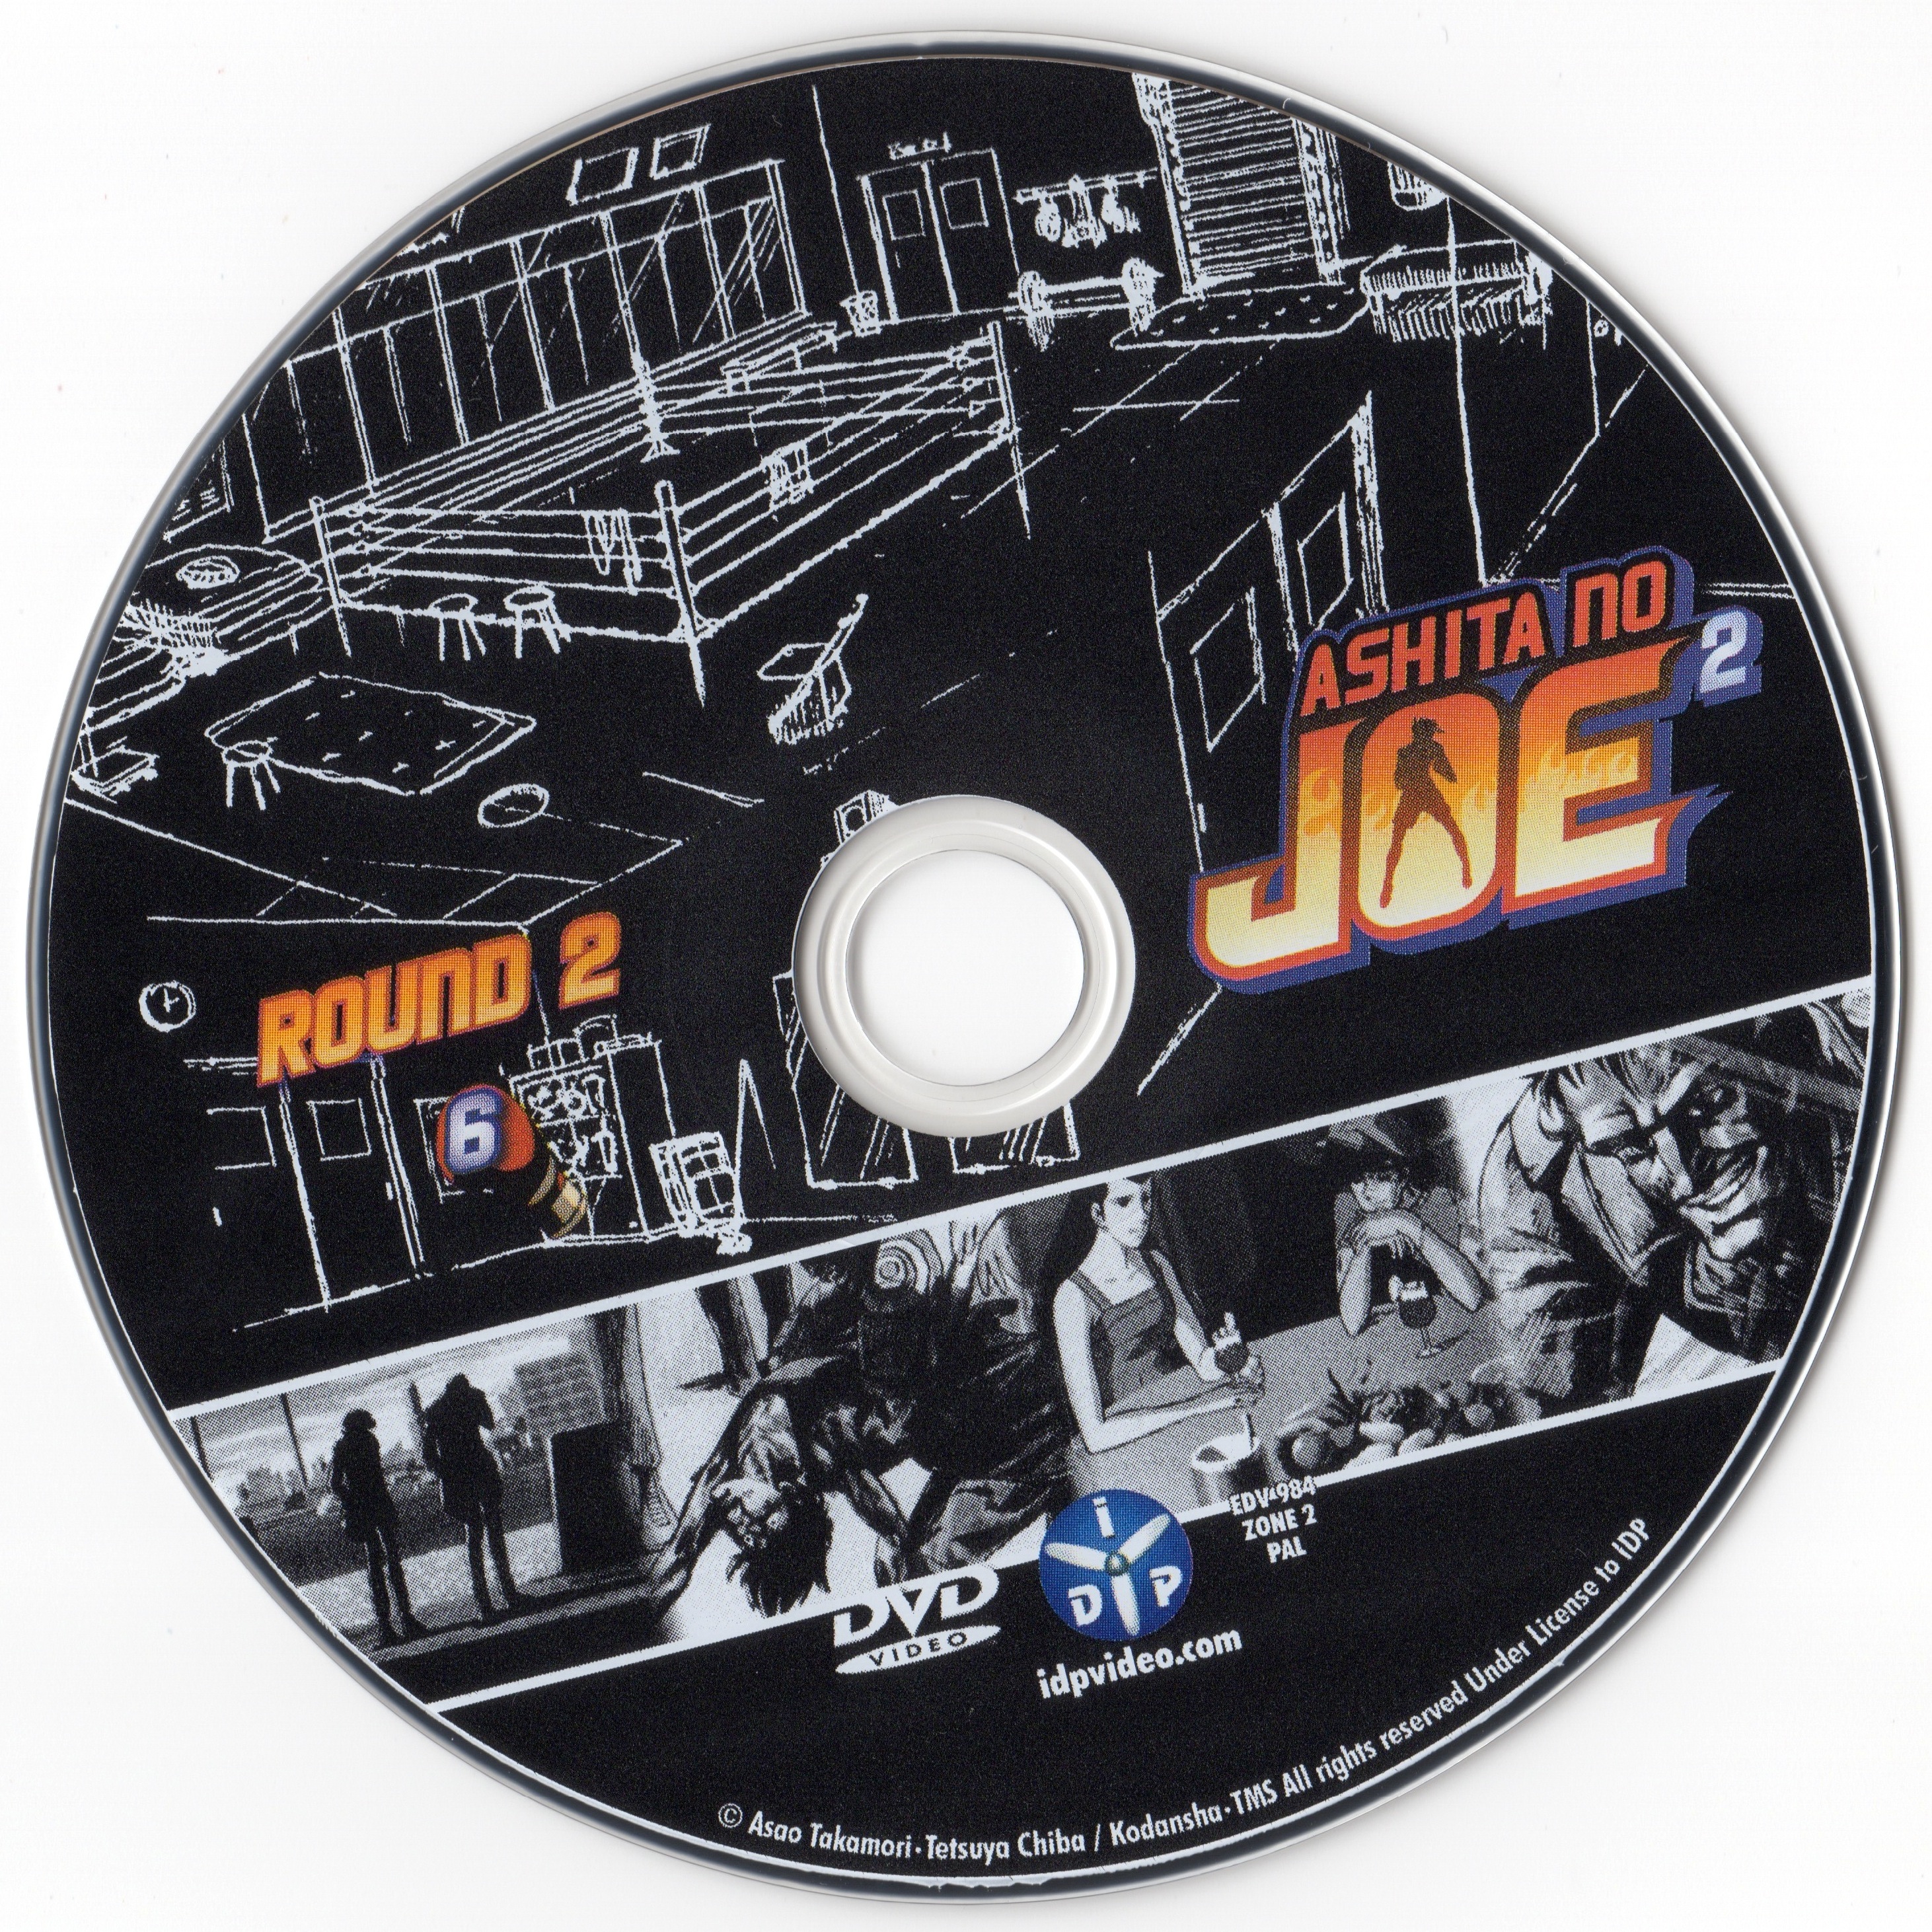 Ashita No Joe 2 Round 1 DVD 6